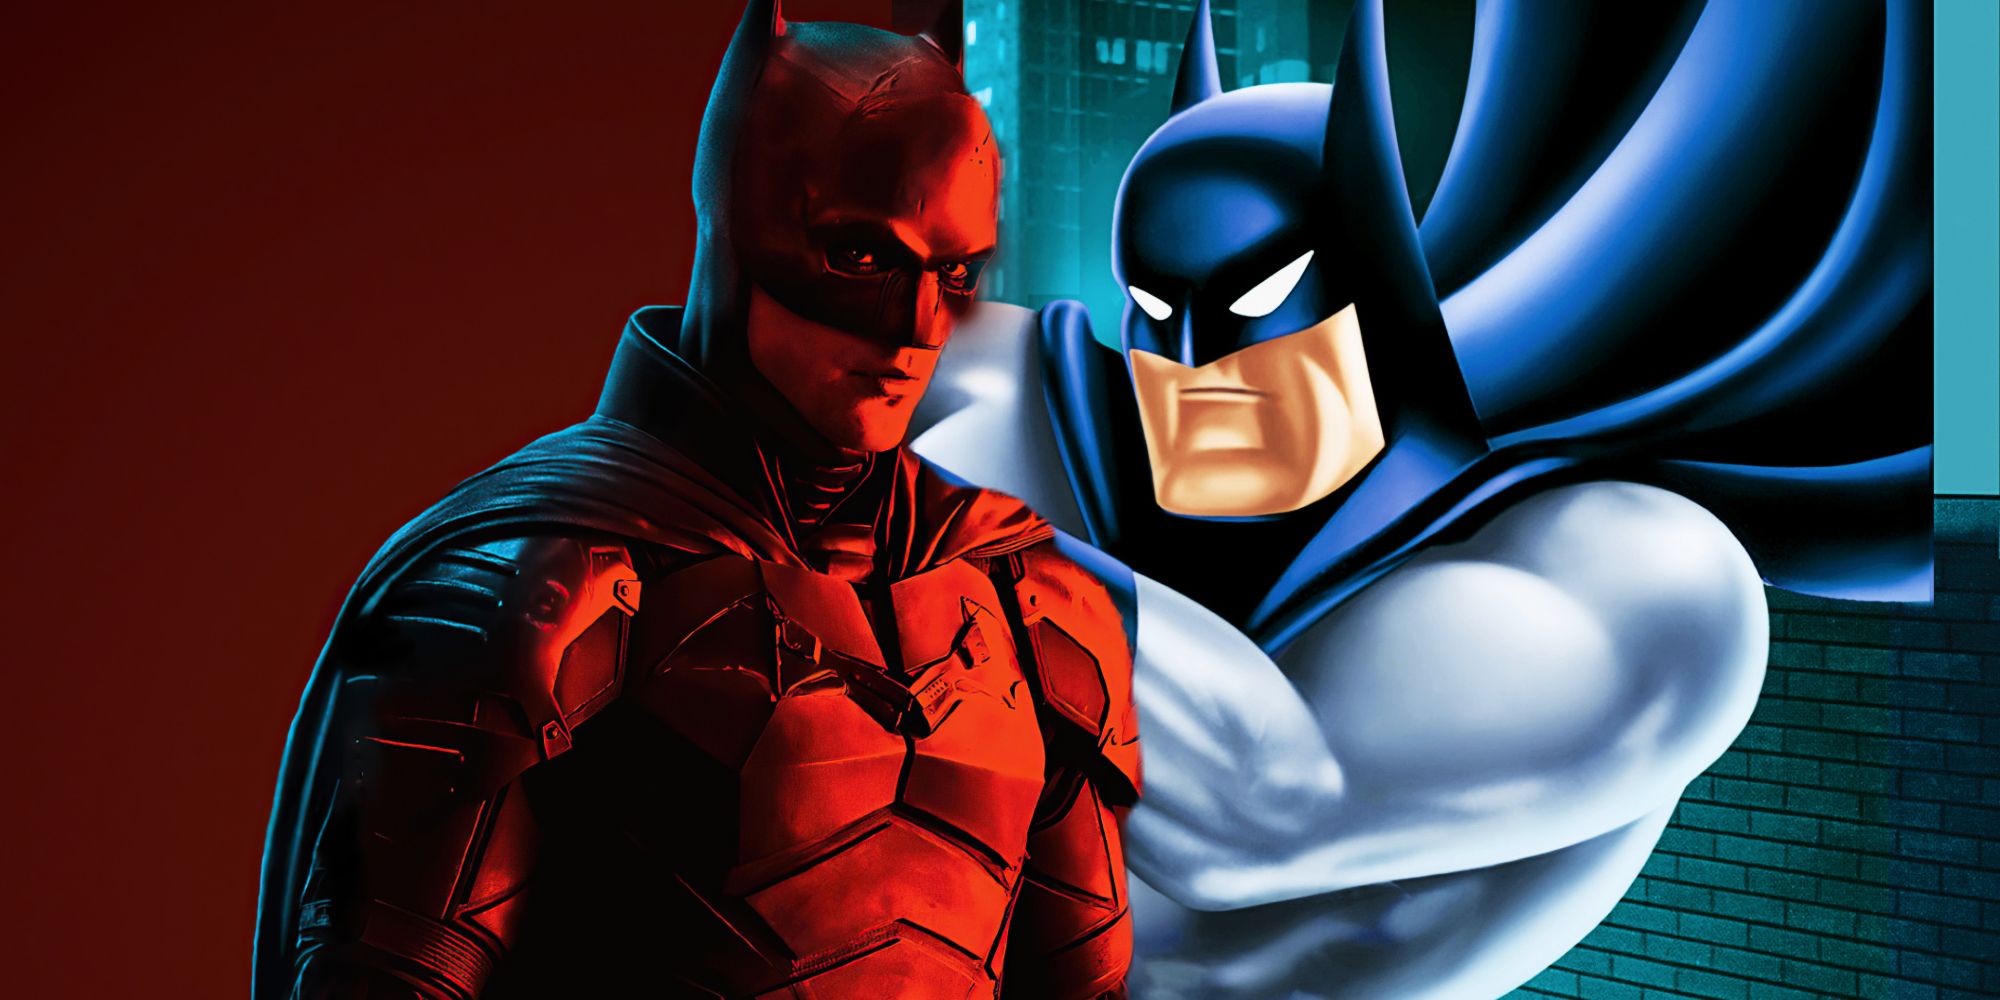 La teoría de Batman afirma que la línea "Venganza" se burla del futuro del caballero oscuro